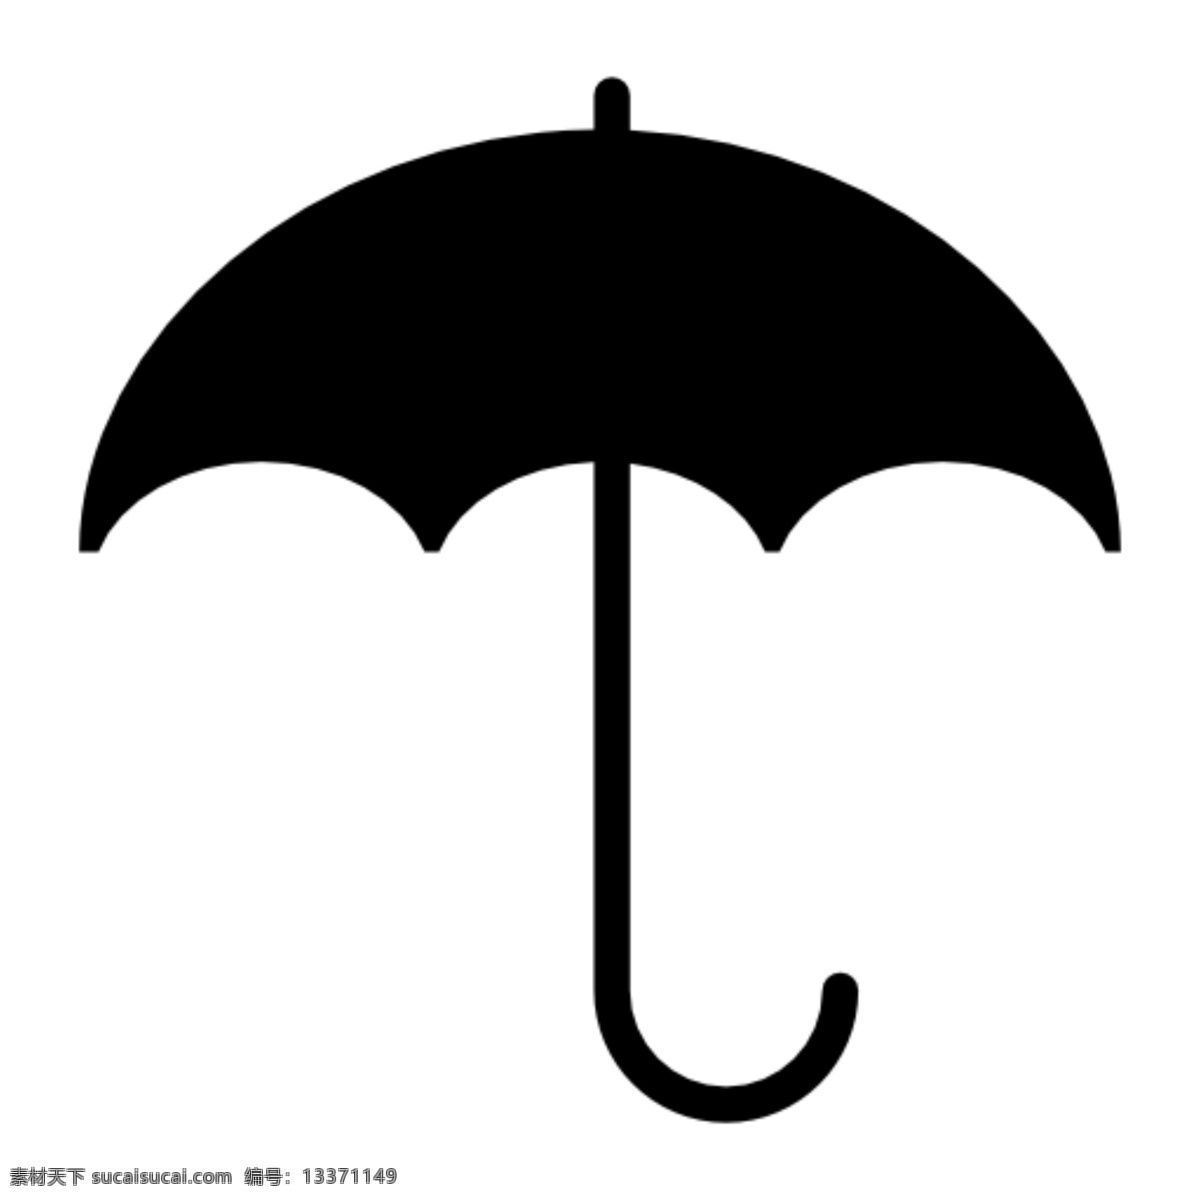 雨伞图片 雨伞 标志 图标 雨伞剪影